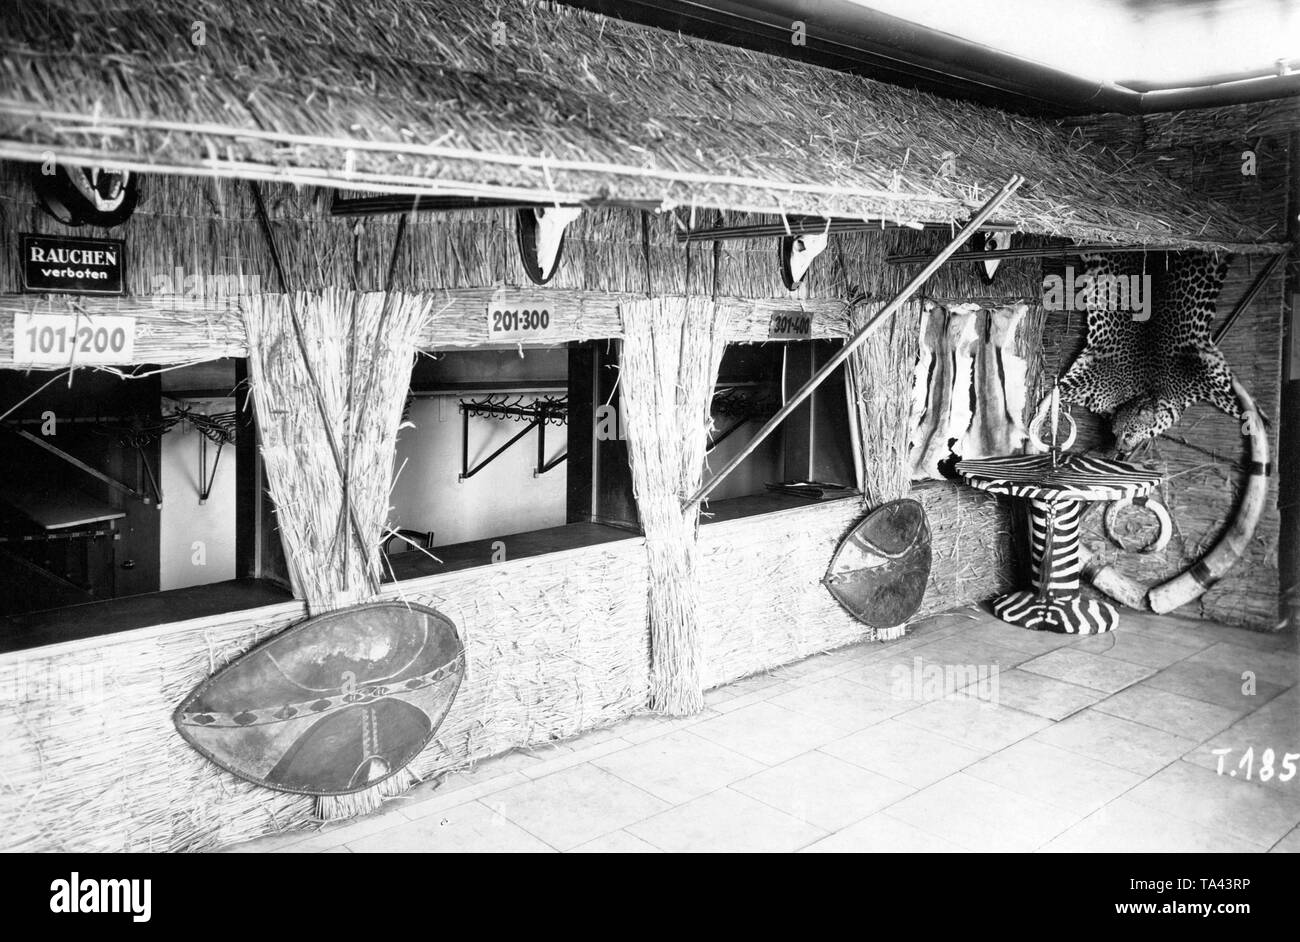 Il design degli interni del Ufa-Palast am Zoo di Berlino che una volta era il più grande del cinema tedesco. Originariamente l'architetto Carl Gause fu incaricato di progettare l'edificio come in una sala per esposizioni. Nel 1905 e 1906 era utilizzato anche come tale e nel 1919 fu convertito in un cinema. Foto Stock